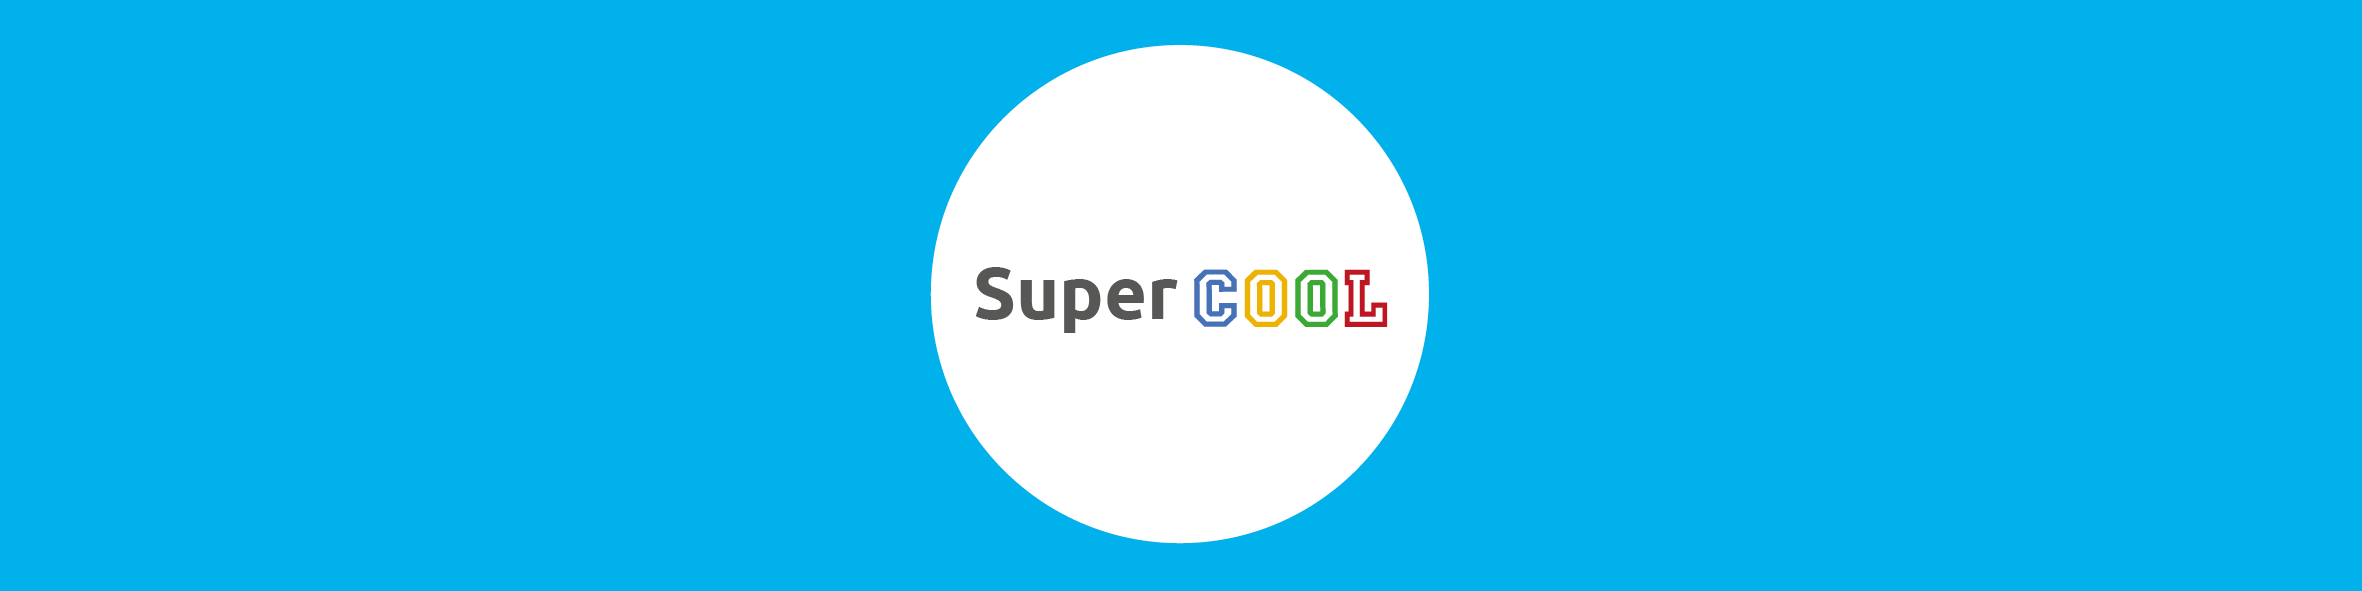 SuperCOOL - Cloudwise Academy header trainingsaanbod